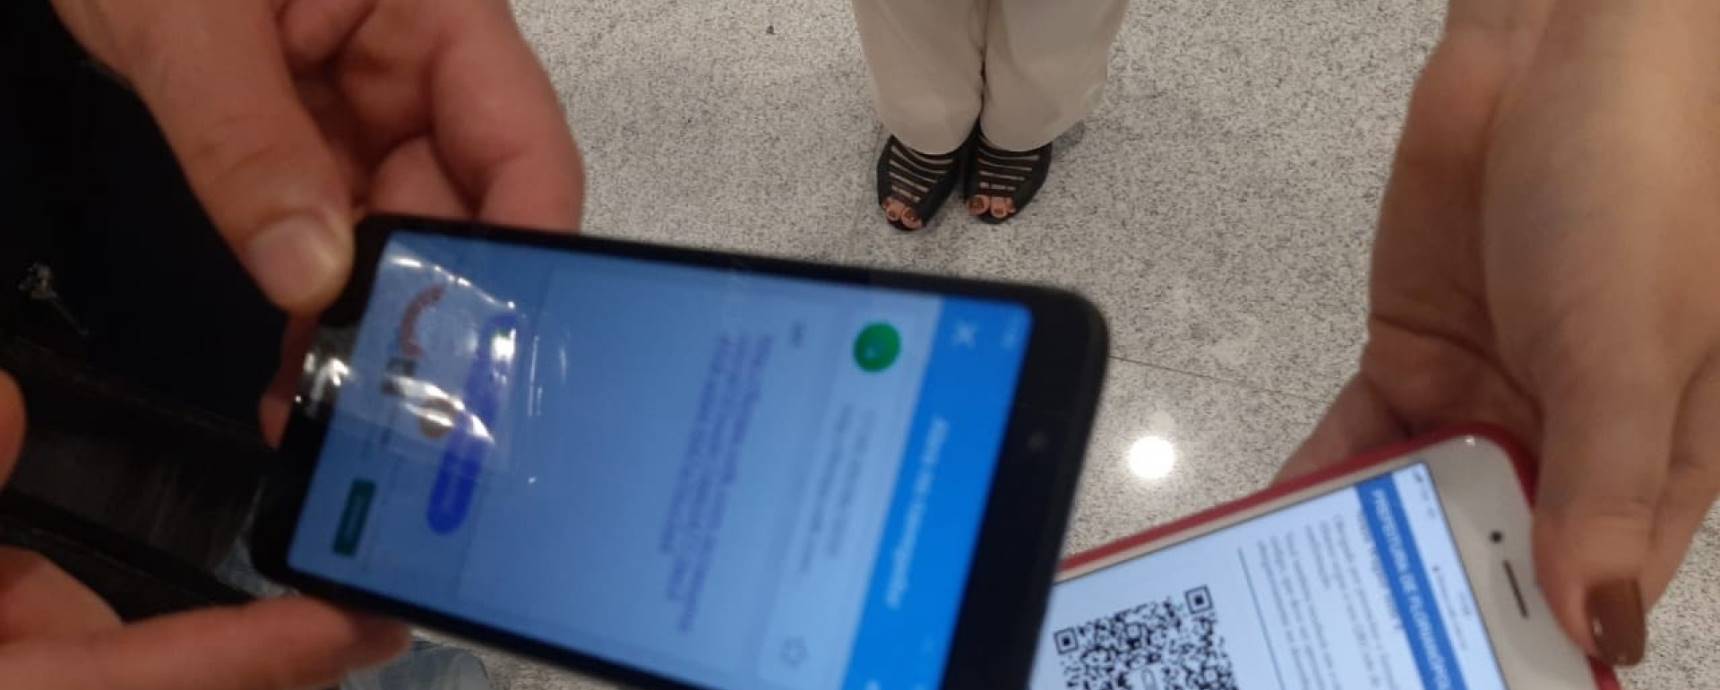 Formulário de controle sanitário para passageiros com destino a Florianópolis agora é digital